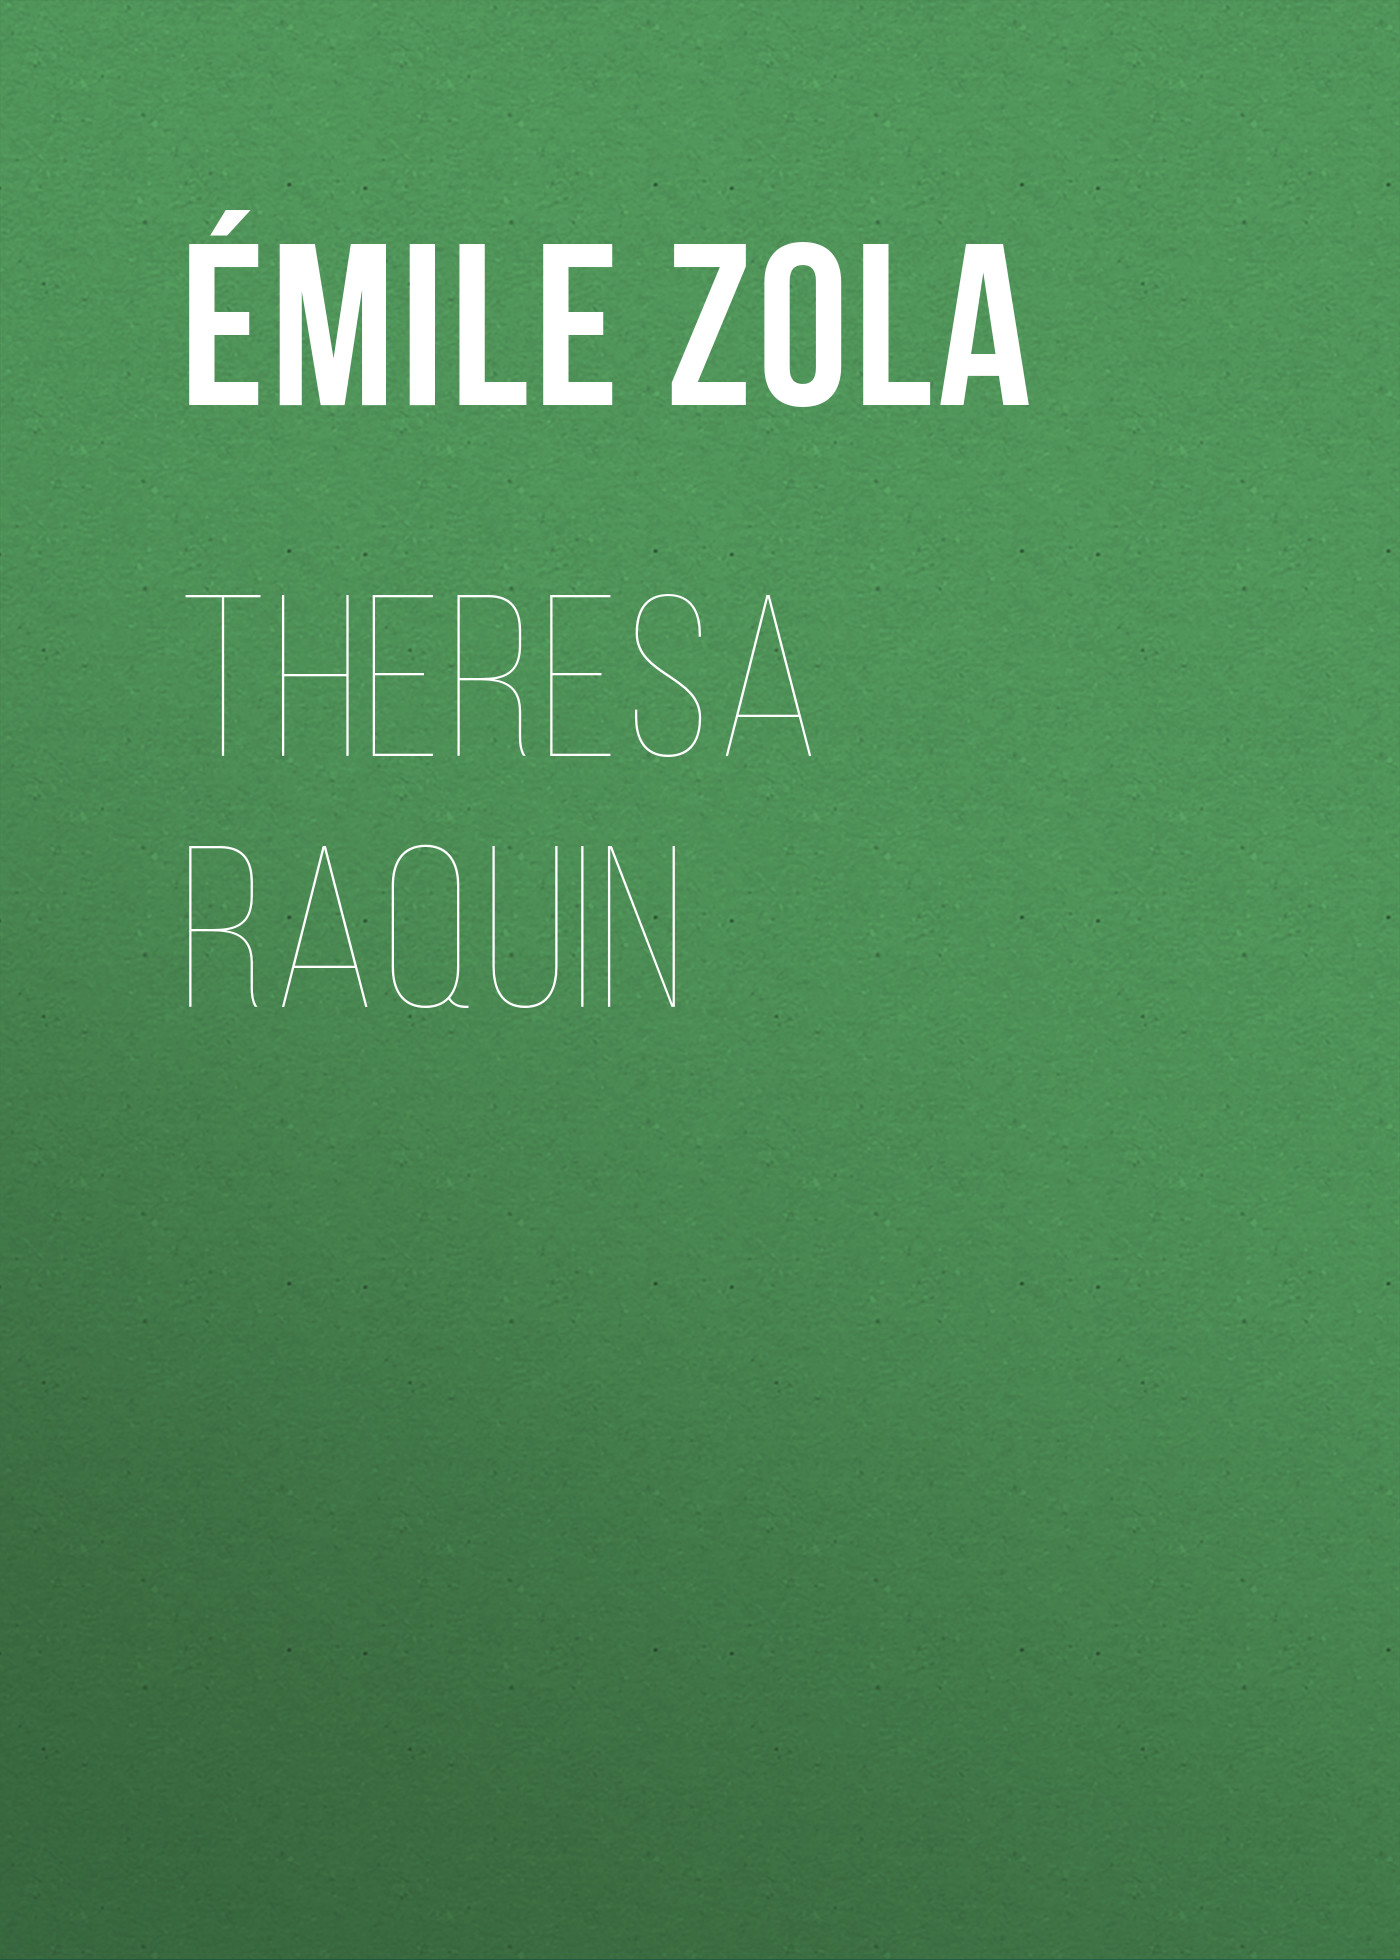 Книга Theresa Raquin из серии , созданная Émile Zola, может относится к жанру Литература 19 века, Зарубежная старинная литература, Зарубежная классика. Стоимость электронной книги Theresa Raquin с идентификатором 25560540 составляет 0 руб.